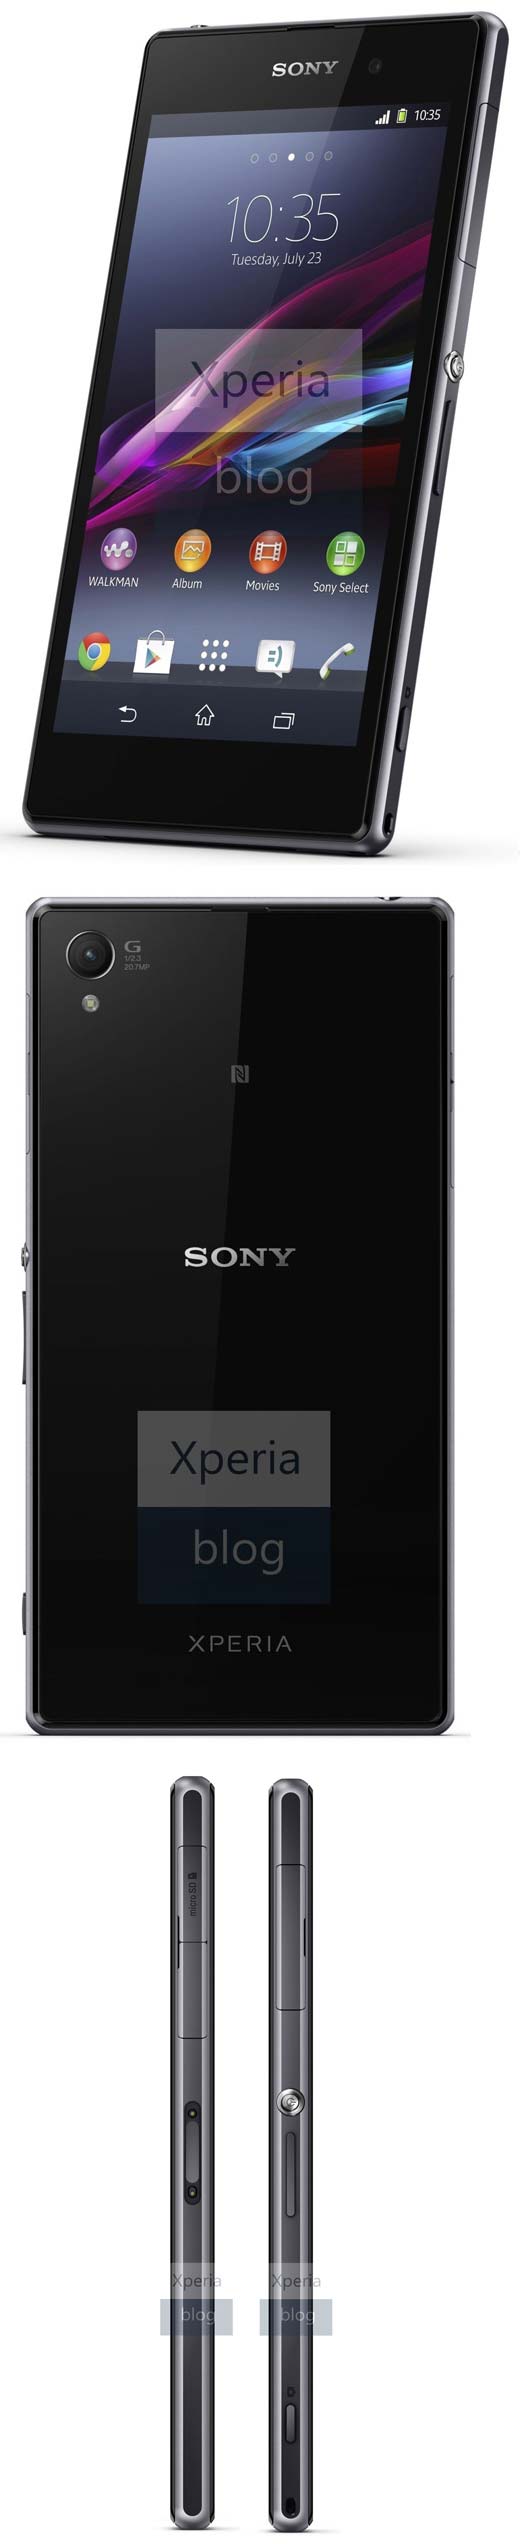 Ещё раз поглядим на смартфон Xperia Z1 от Sony